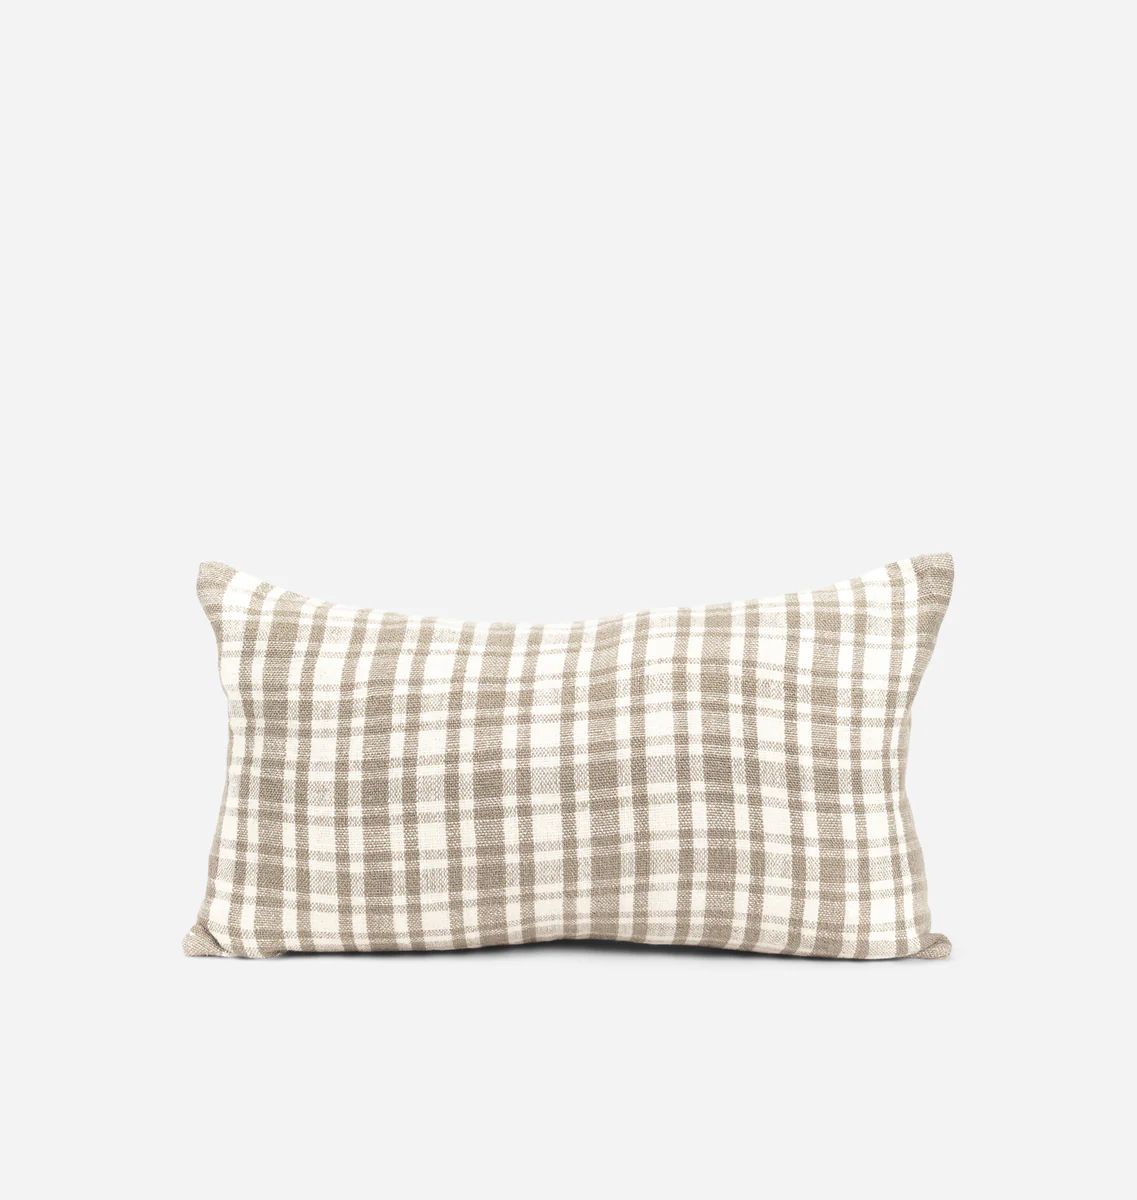 Bower Lumbar Pillow 12" x 20" | Amber Interiors